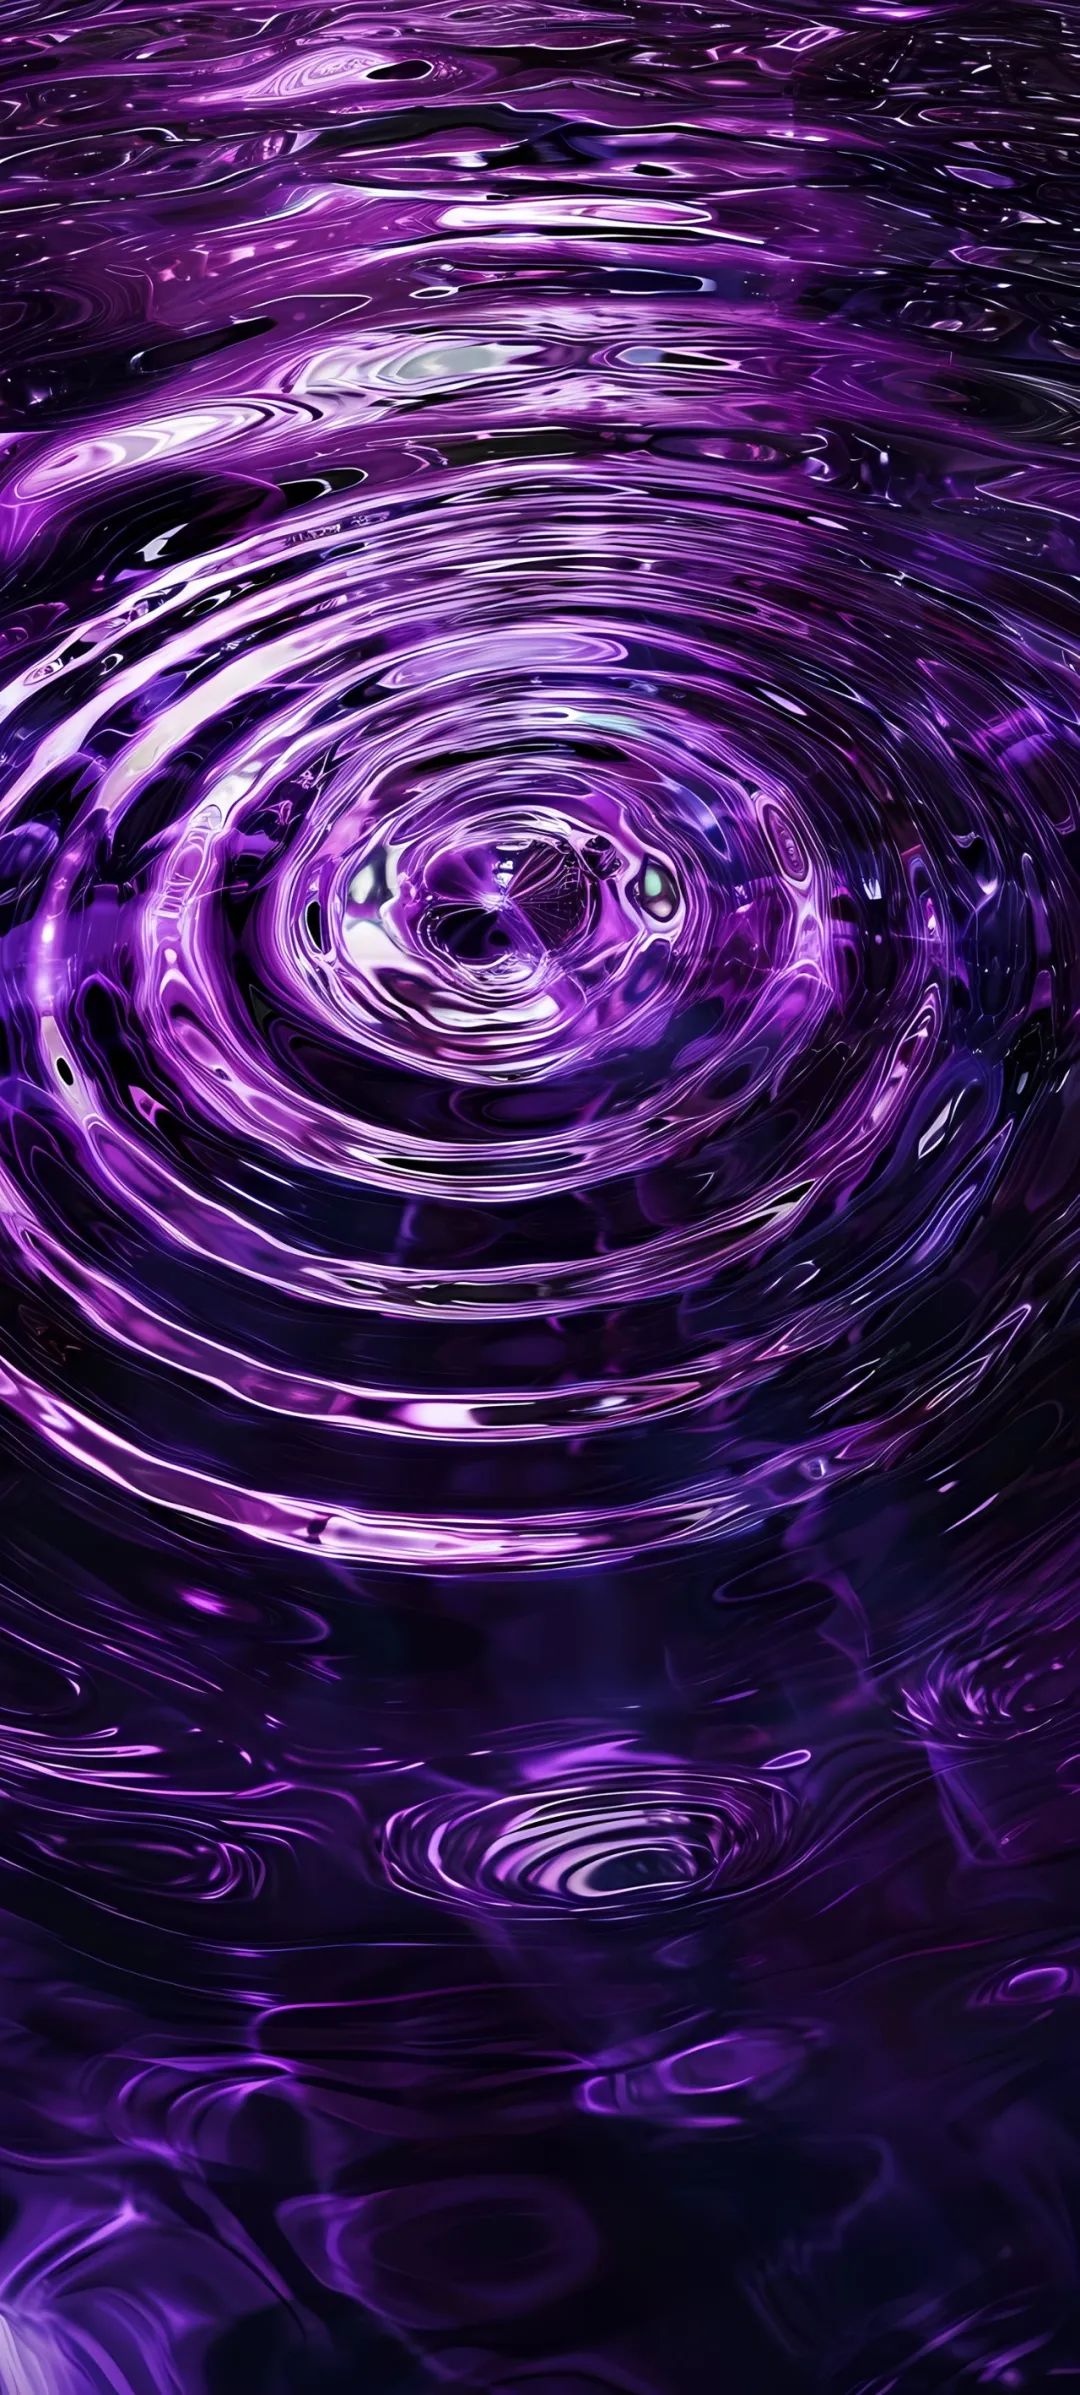 紫色手机壁纸霸气图片